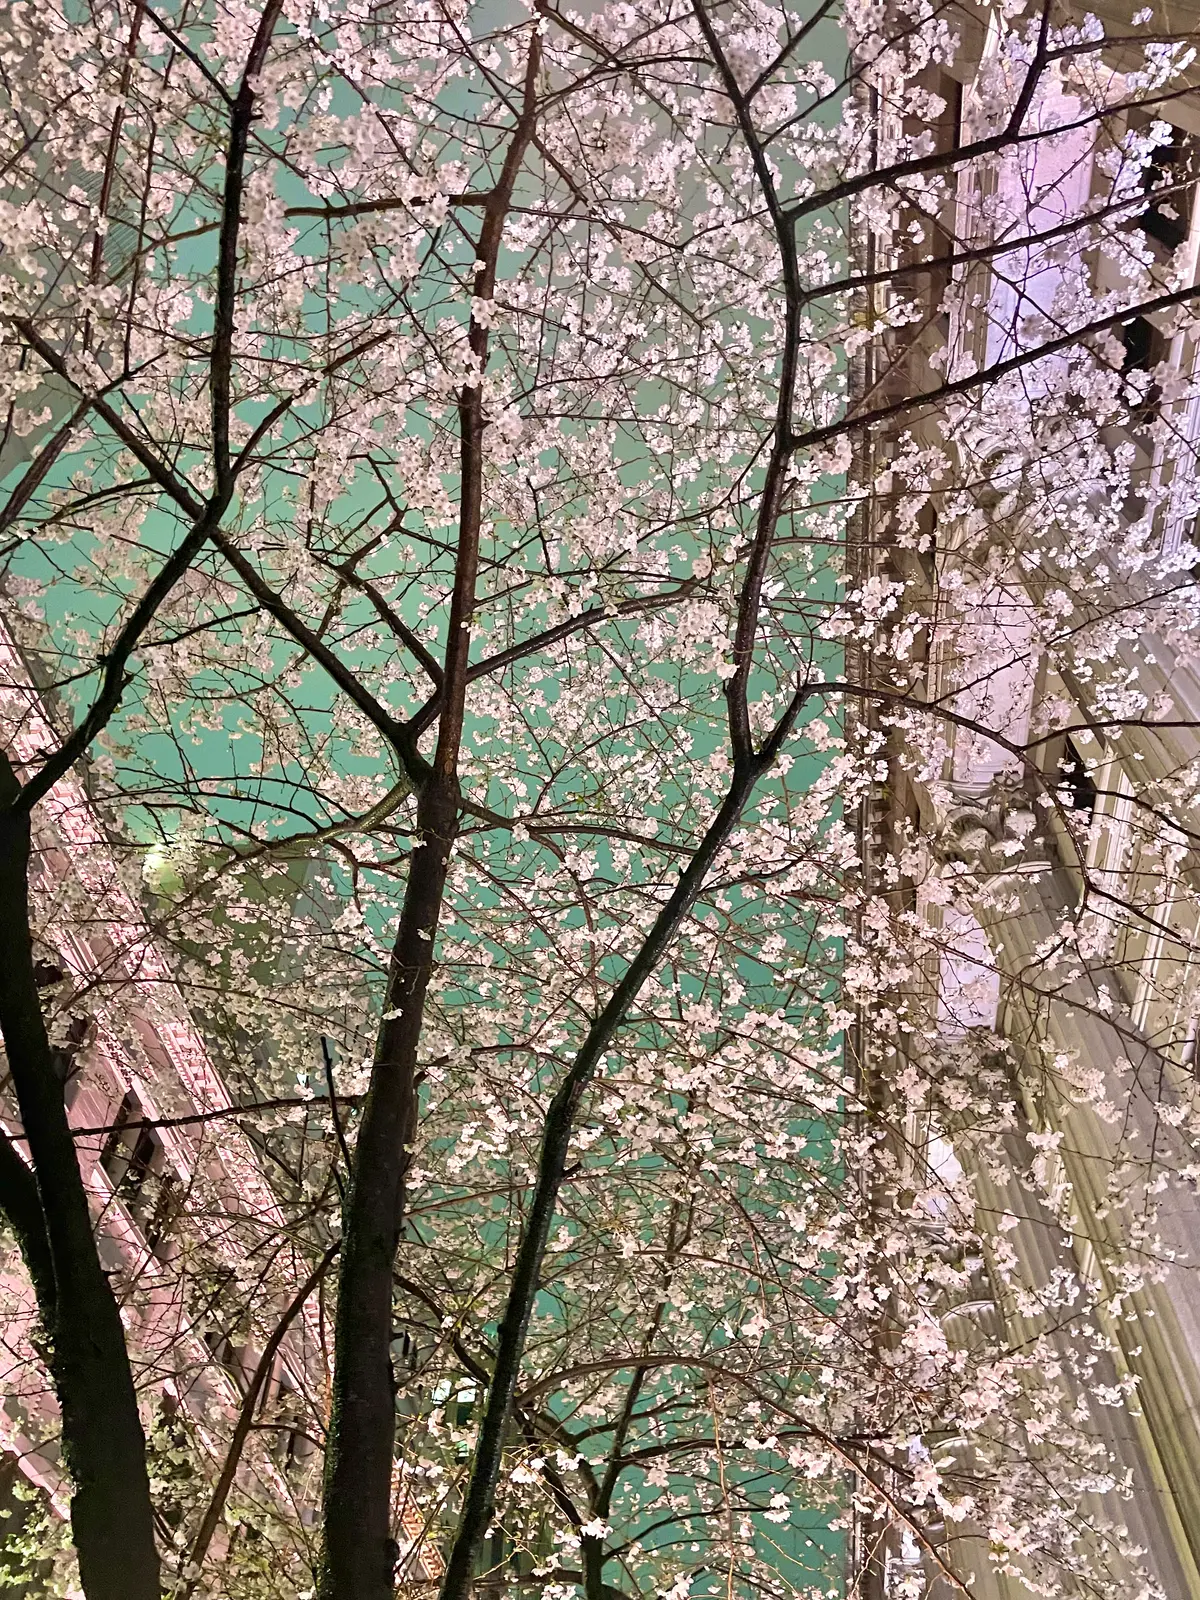 雨でも幻想的な桜を眺められるお花見穴場スポット「江戸桜通り」